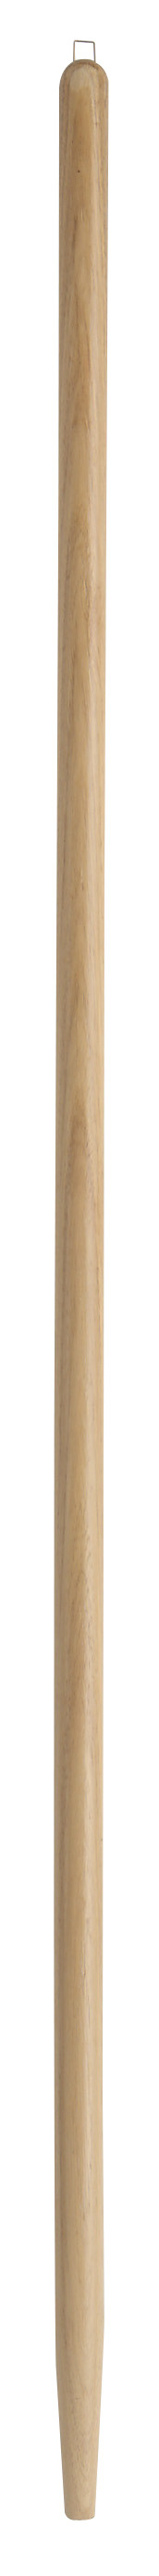 Manche de rechange en bois Ø 28 mm - 130 cm - certifié PEFC 100%